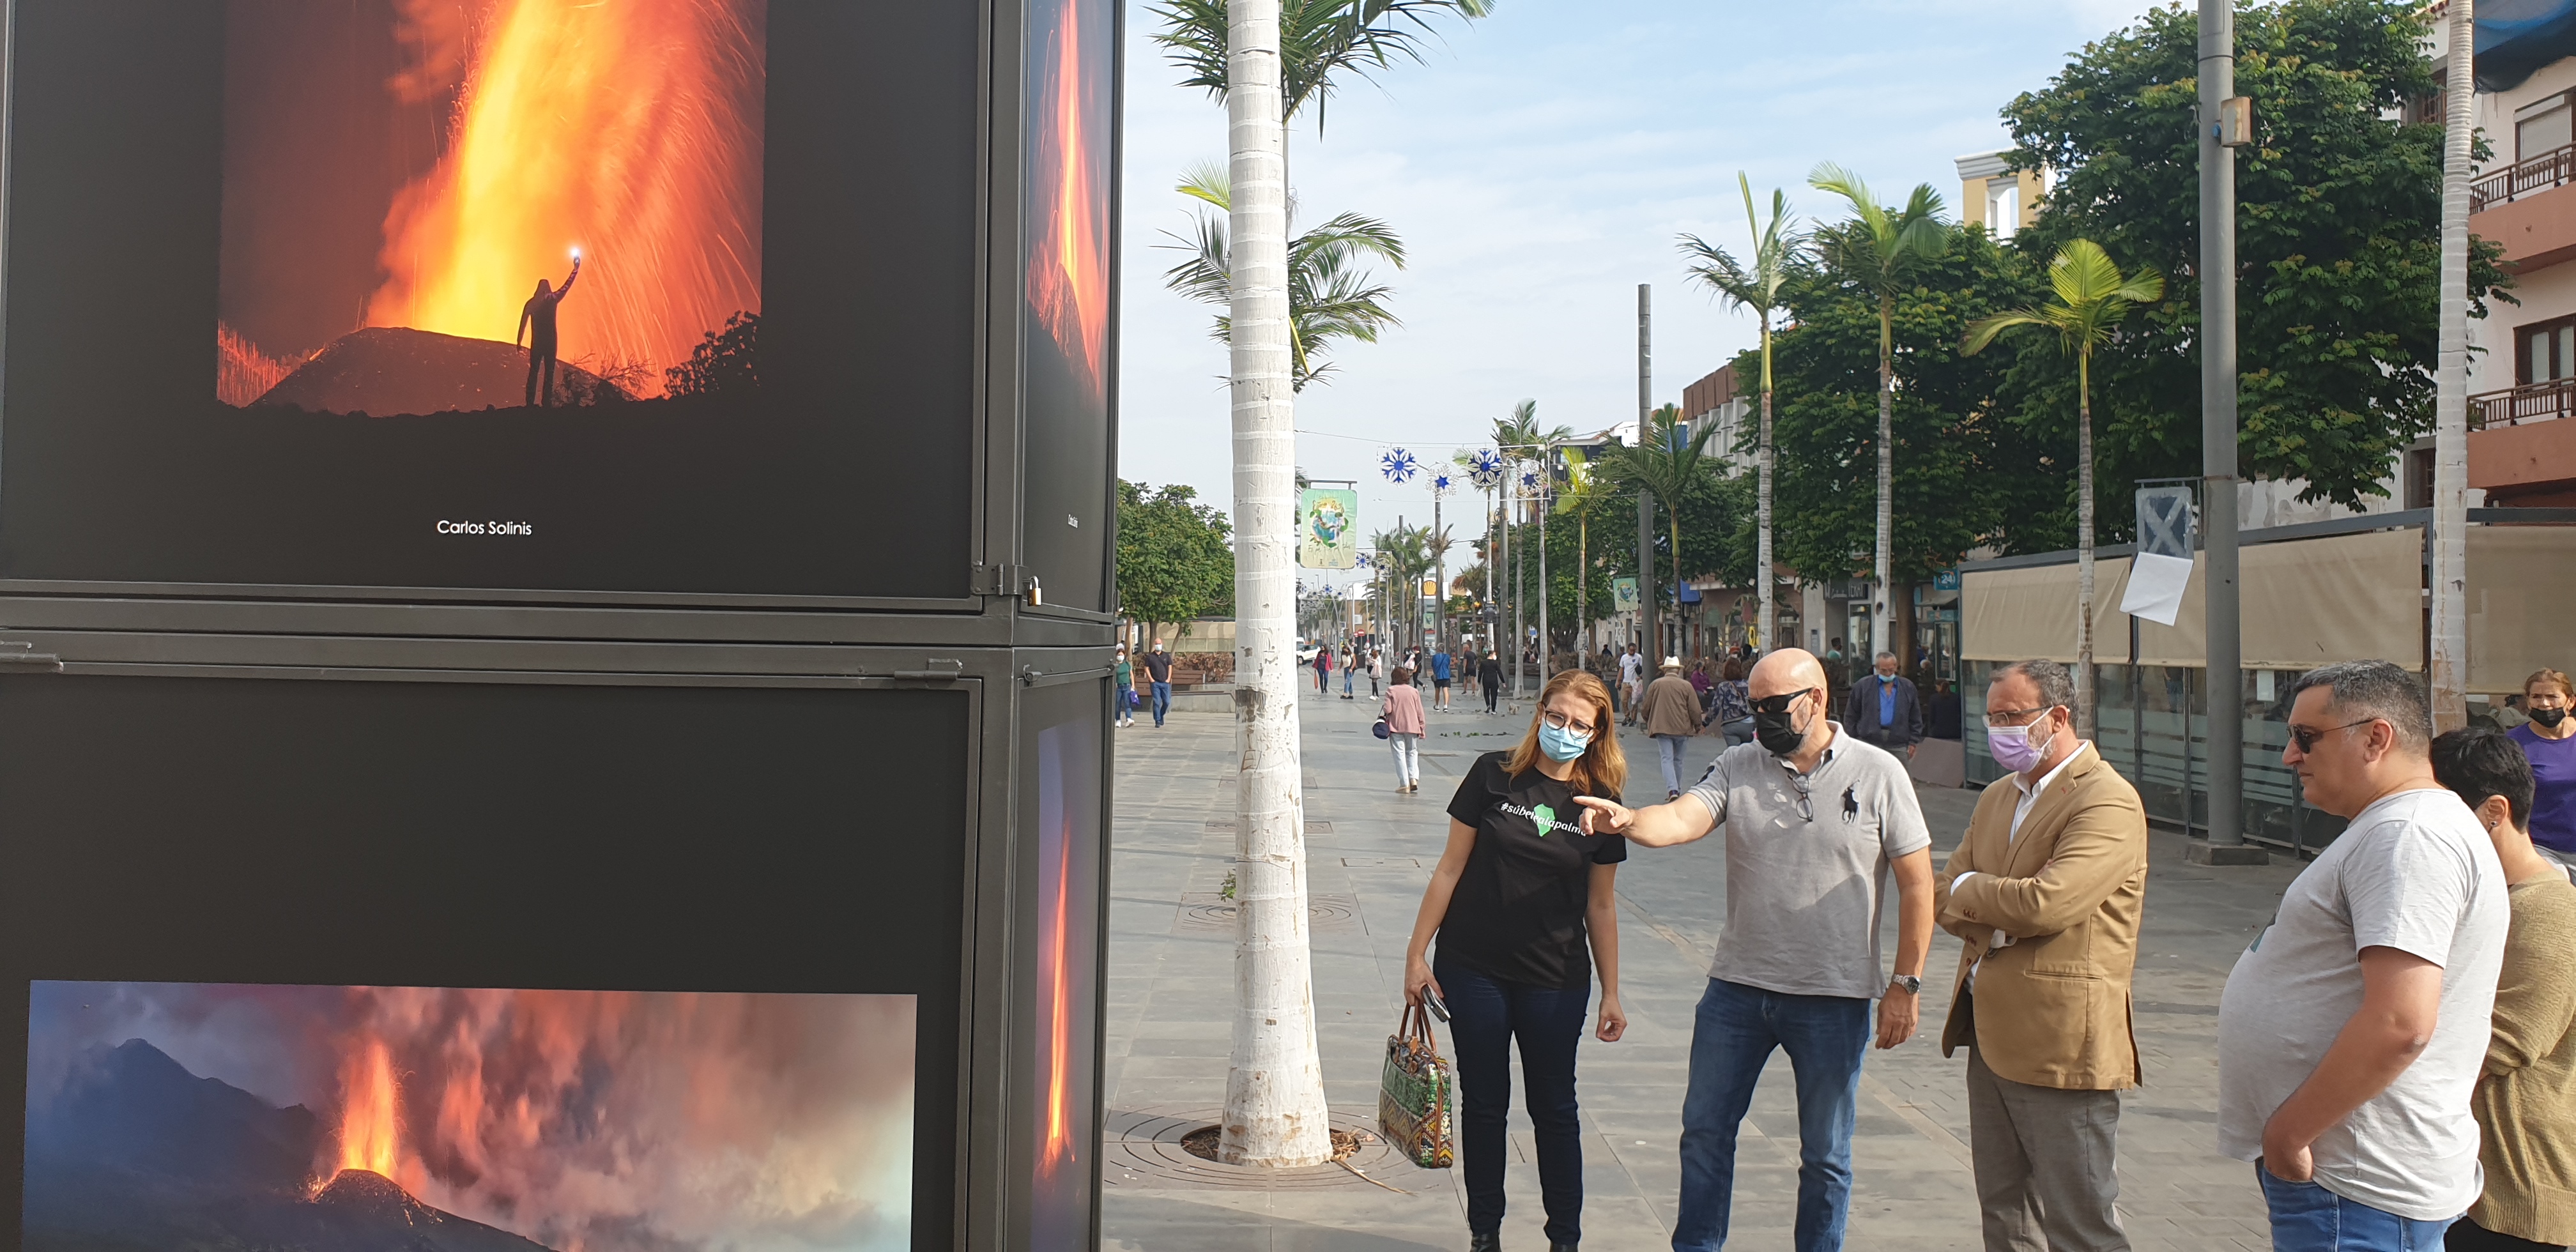 El volcán de La Palma protagoniza en la zona peatonal la exposición solidaria ‘Cenizas’, con fotografías de Saúl Santos, Miguel Pascual y Carlos Solinis